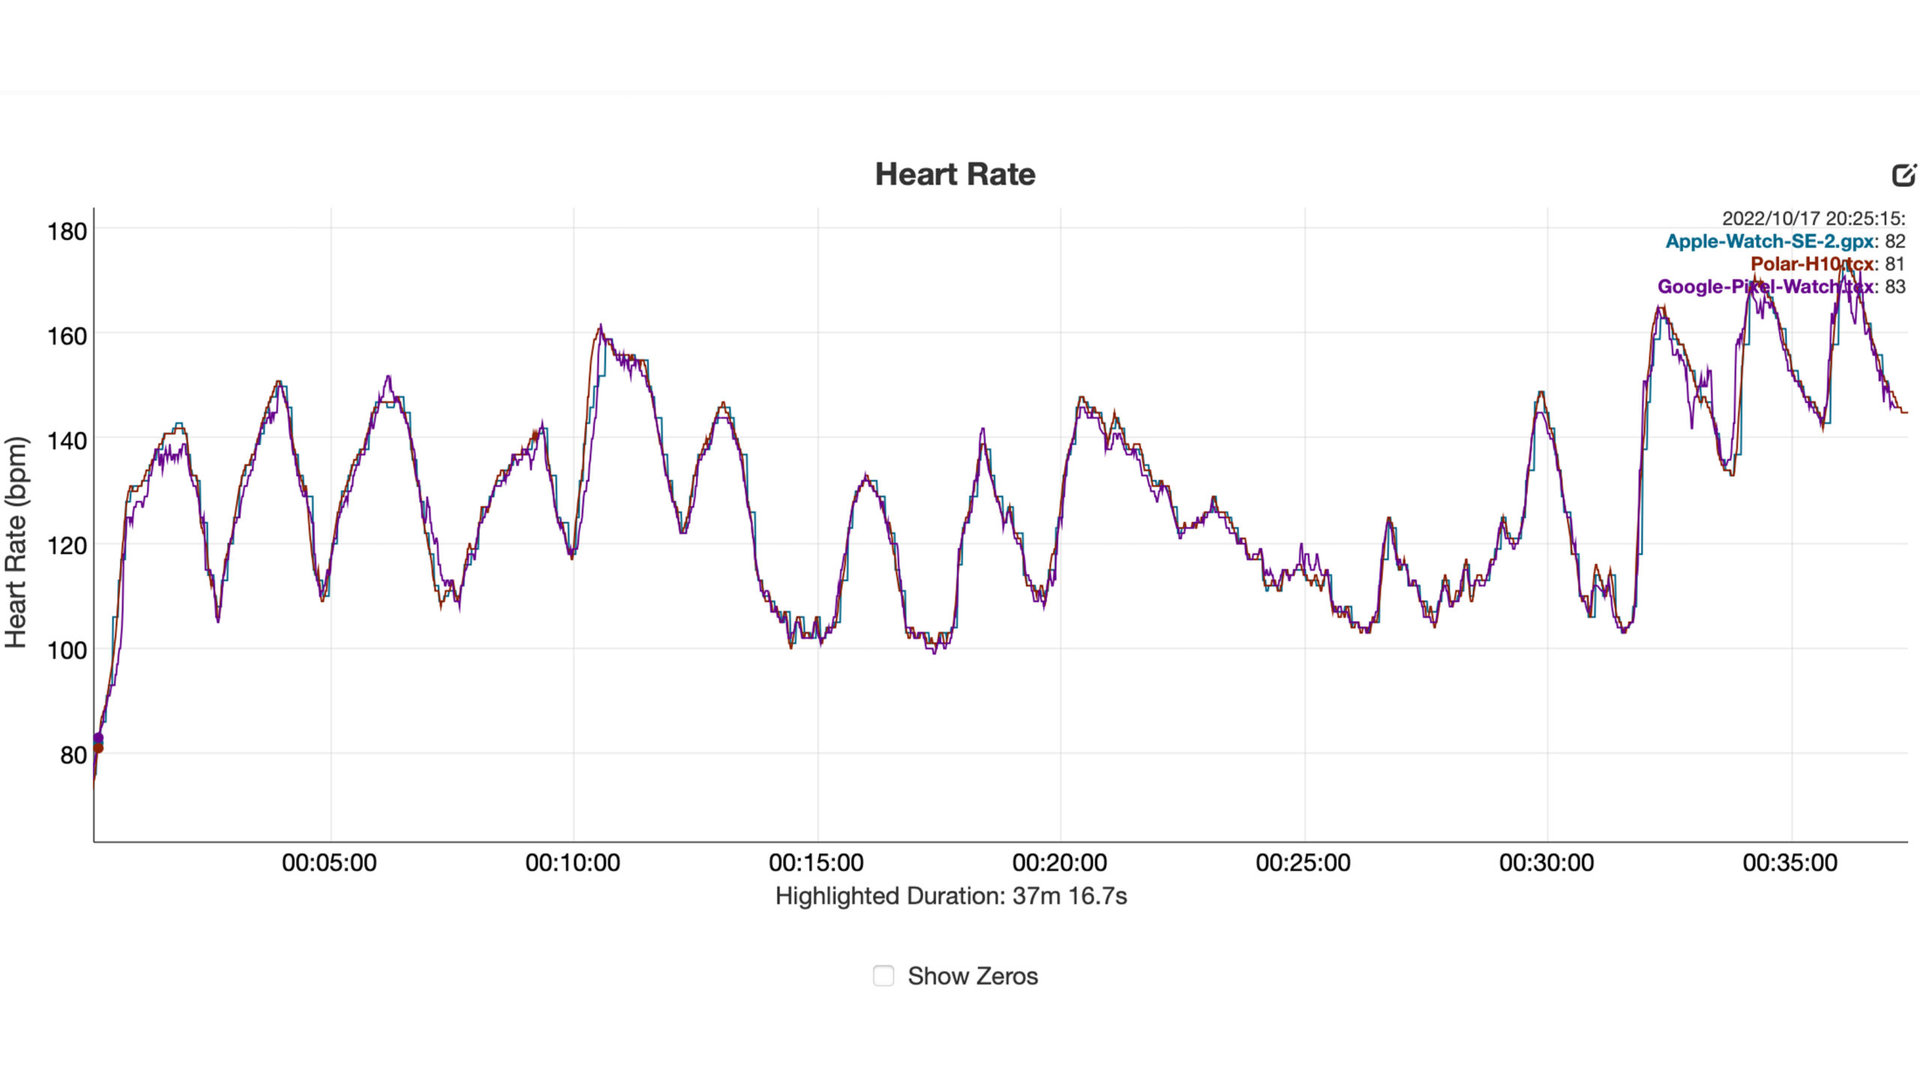 Un gráfico de frecuencia cardíaca muestra los datos de Google Pixel Watch en comparación con un Polar H10 y un Apple Watch SE 2.